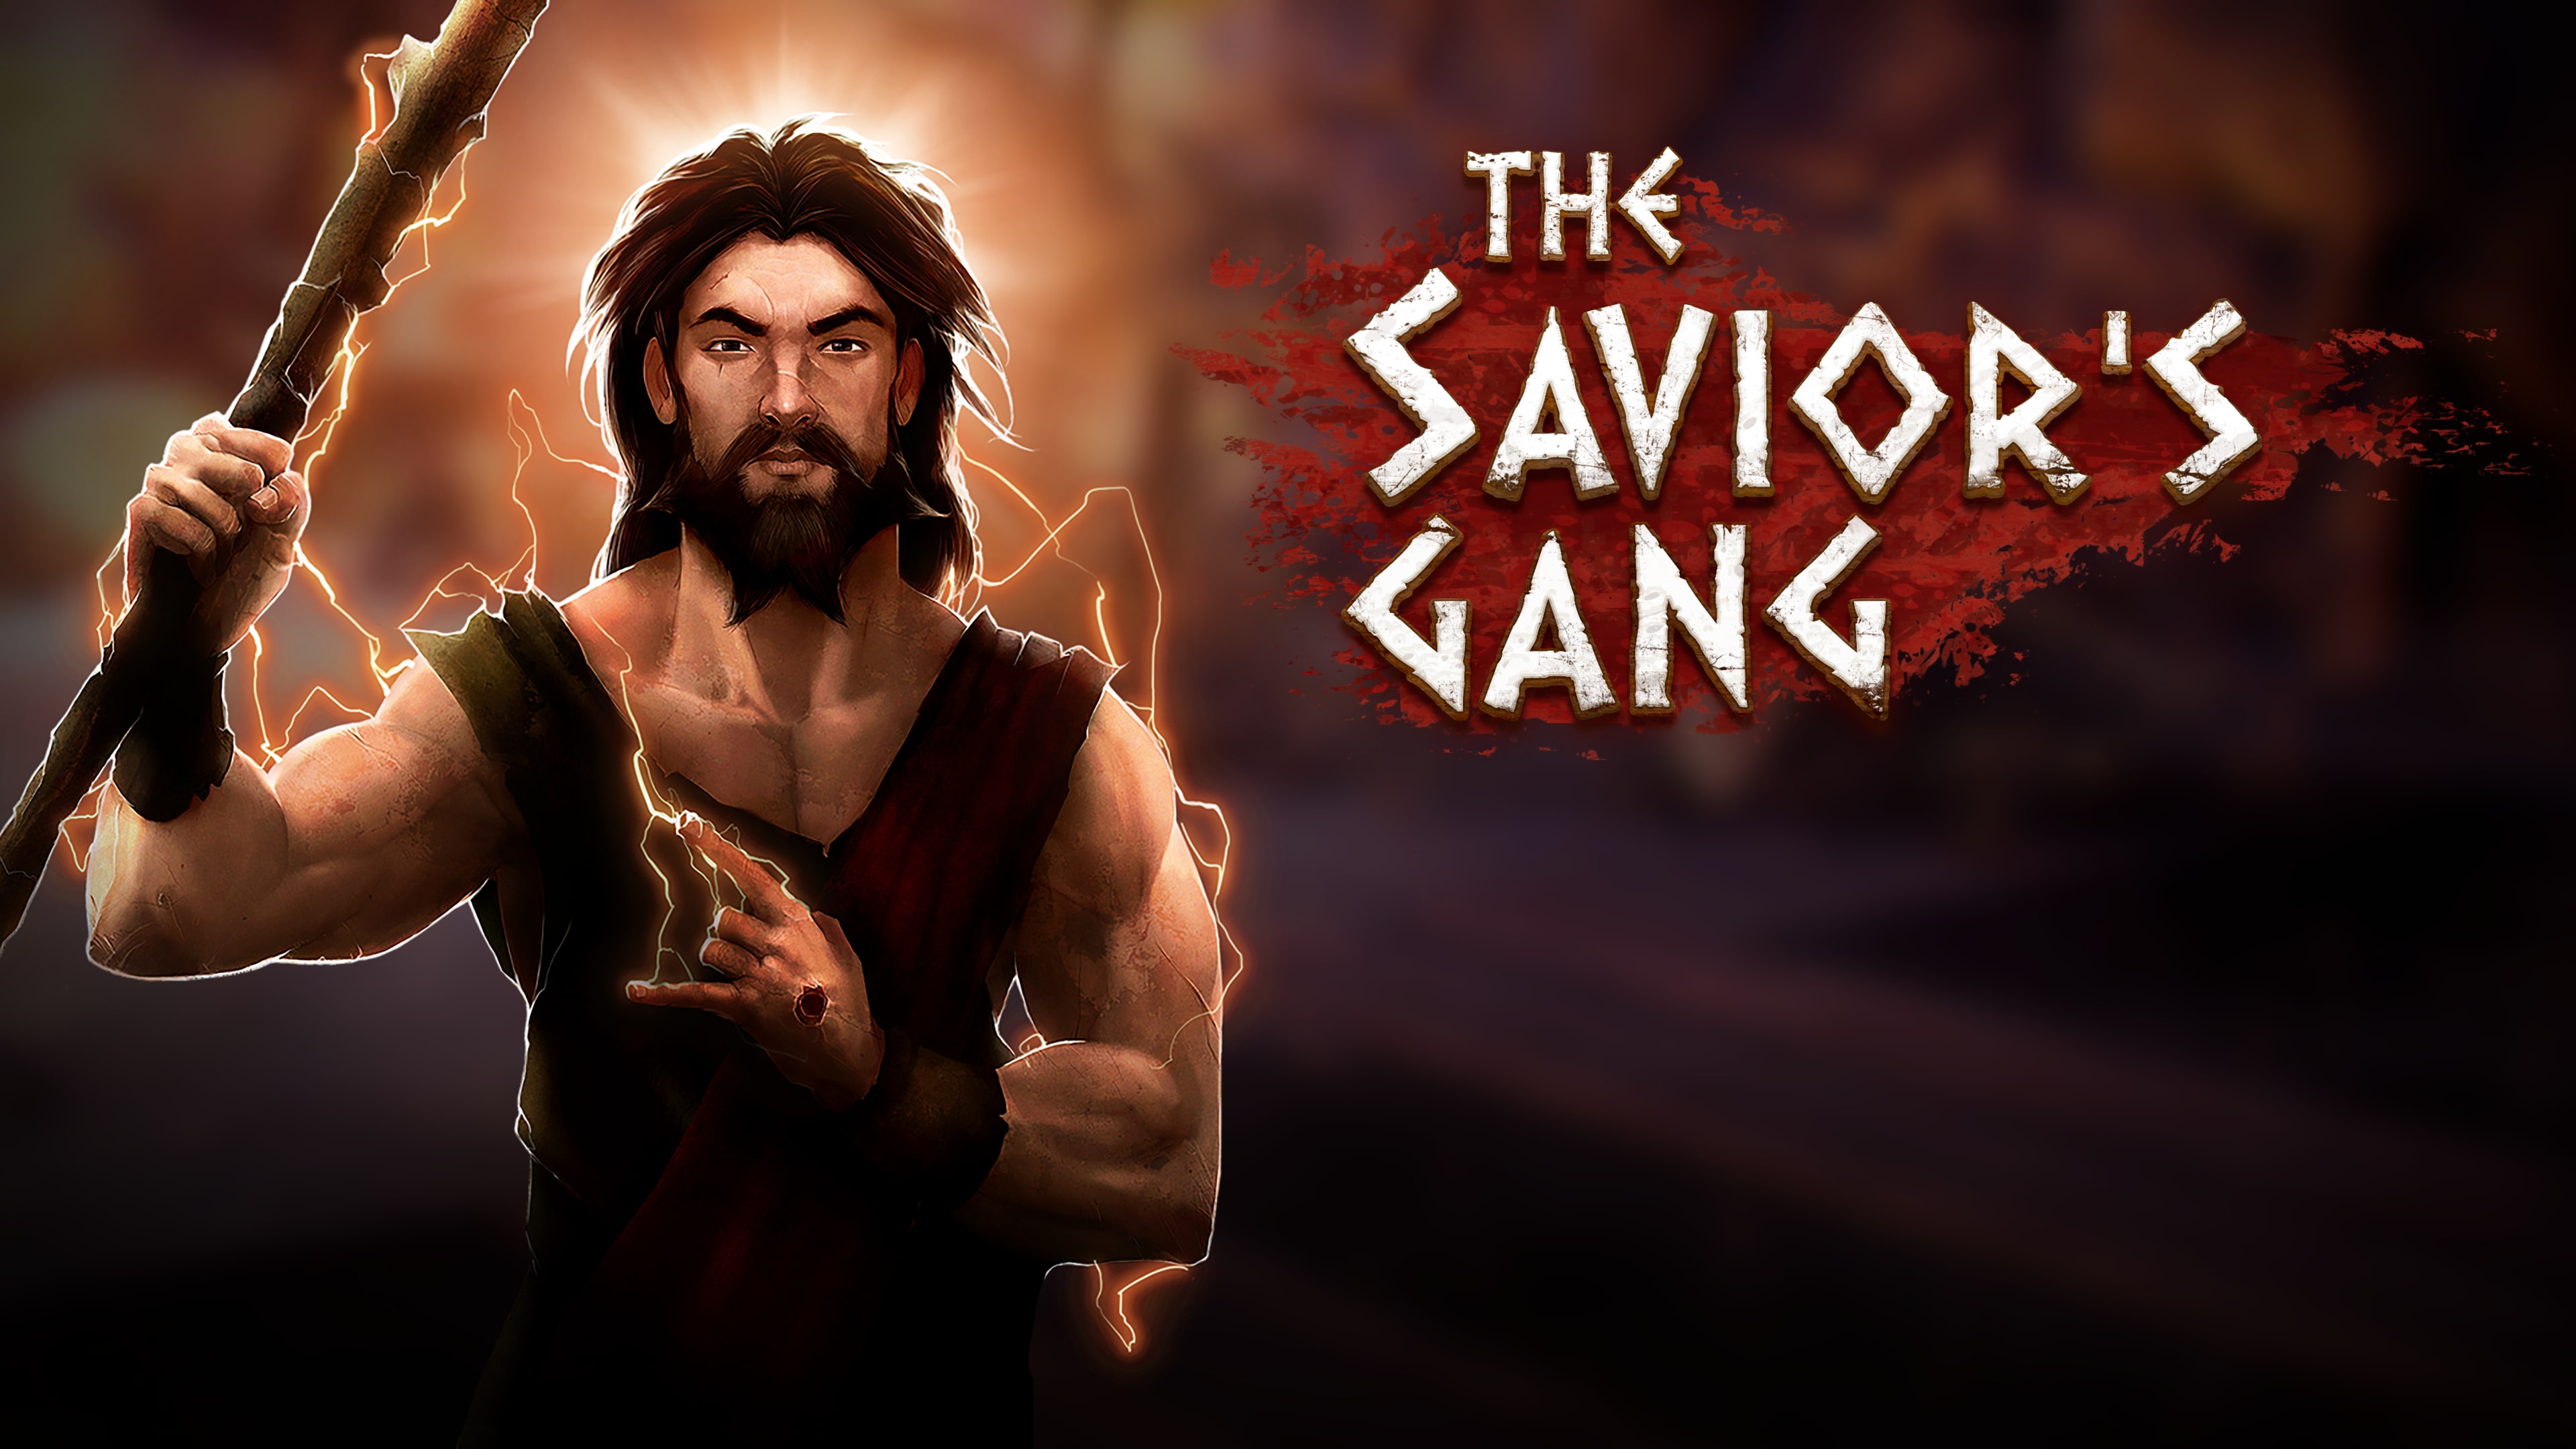 The Savior's Gang (English)